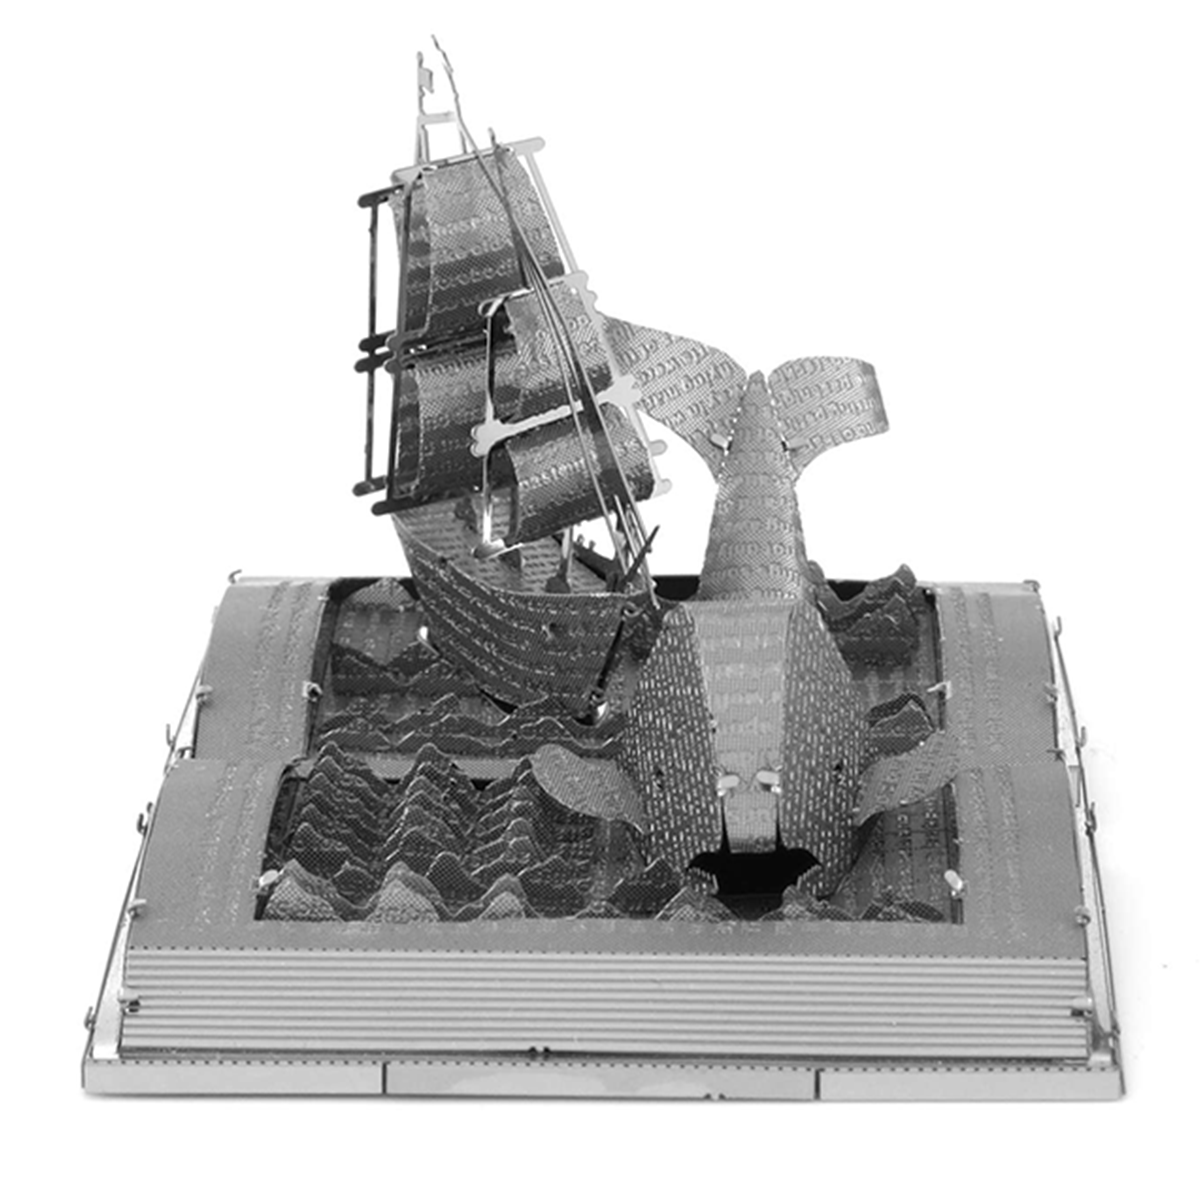 Modellbausatz Moby Dick Skulptur 3D aus Metall Bausatz Wal Schiff Roman 